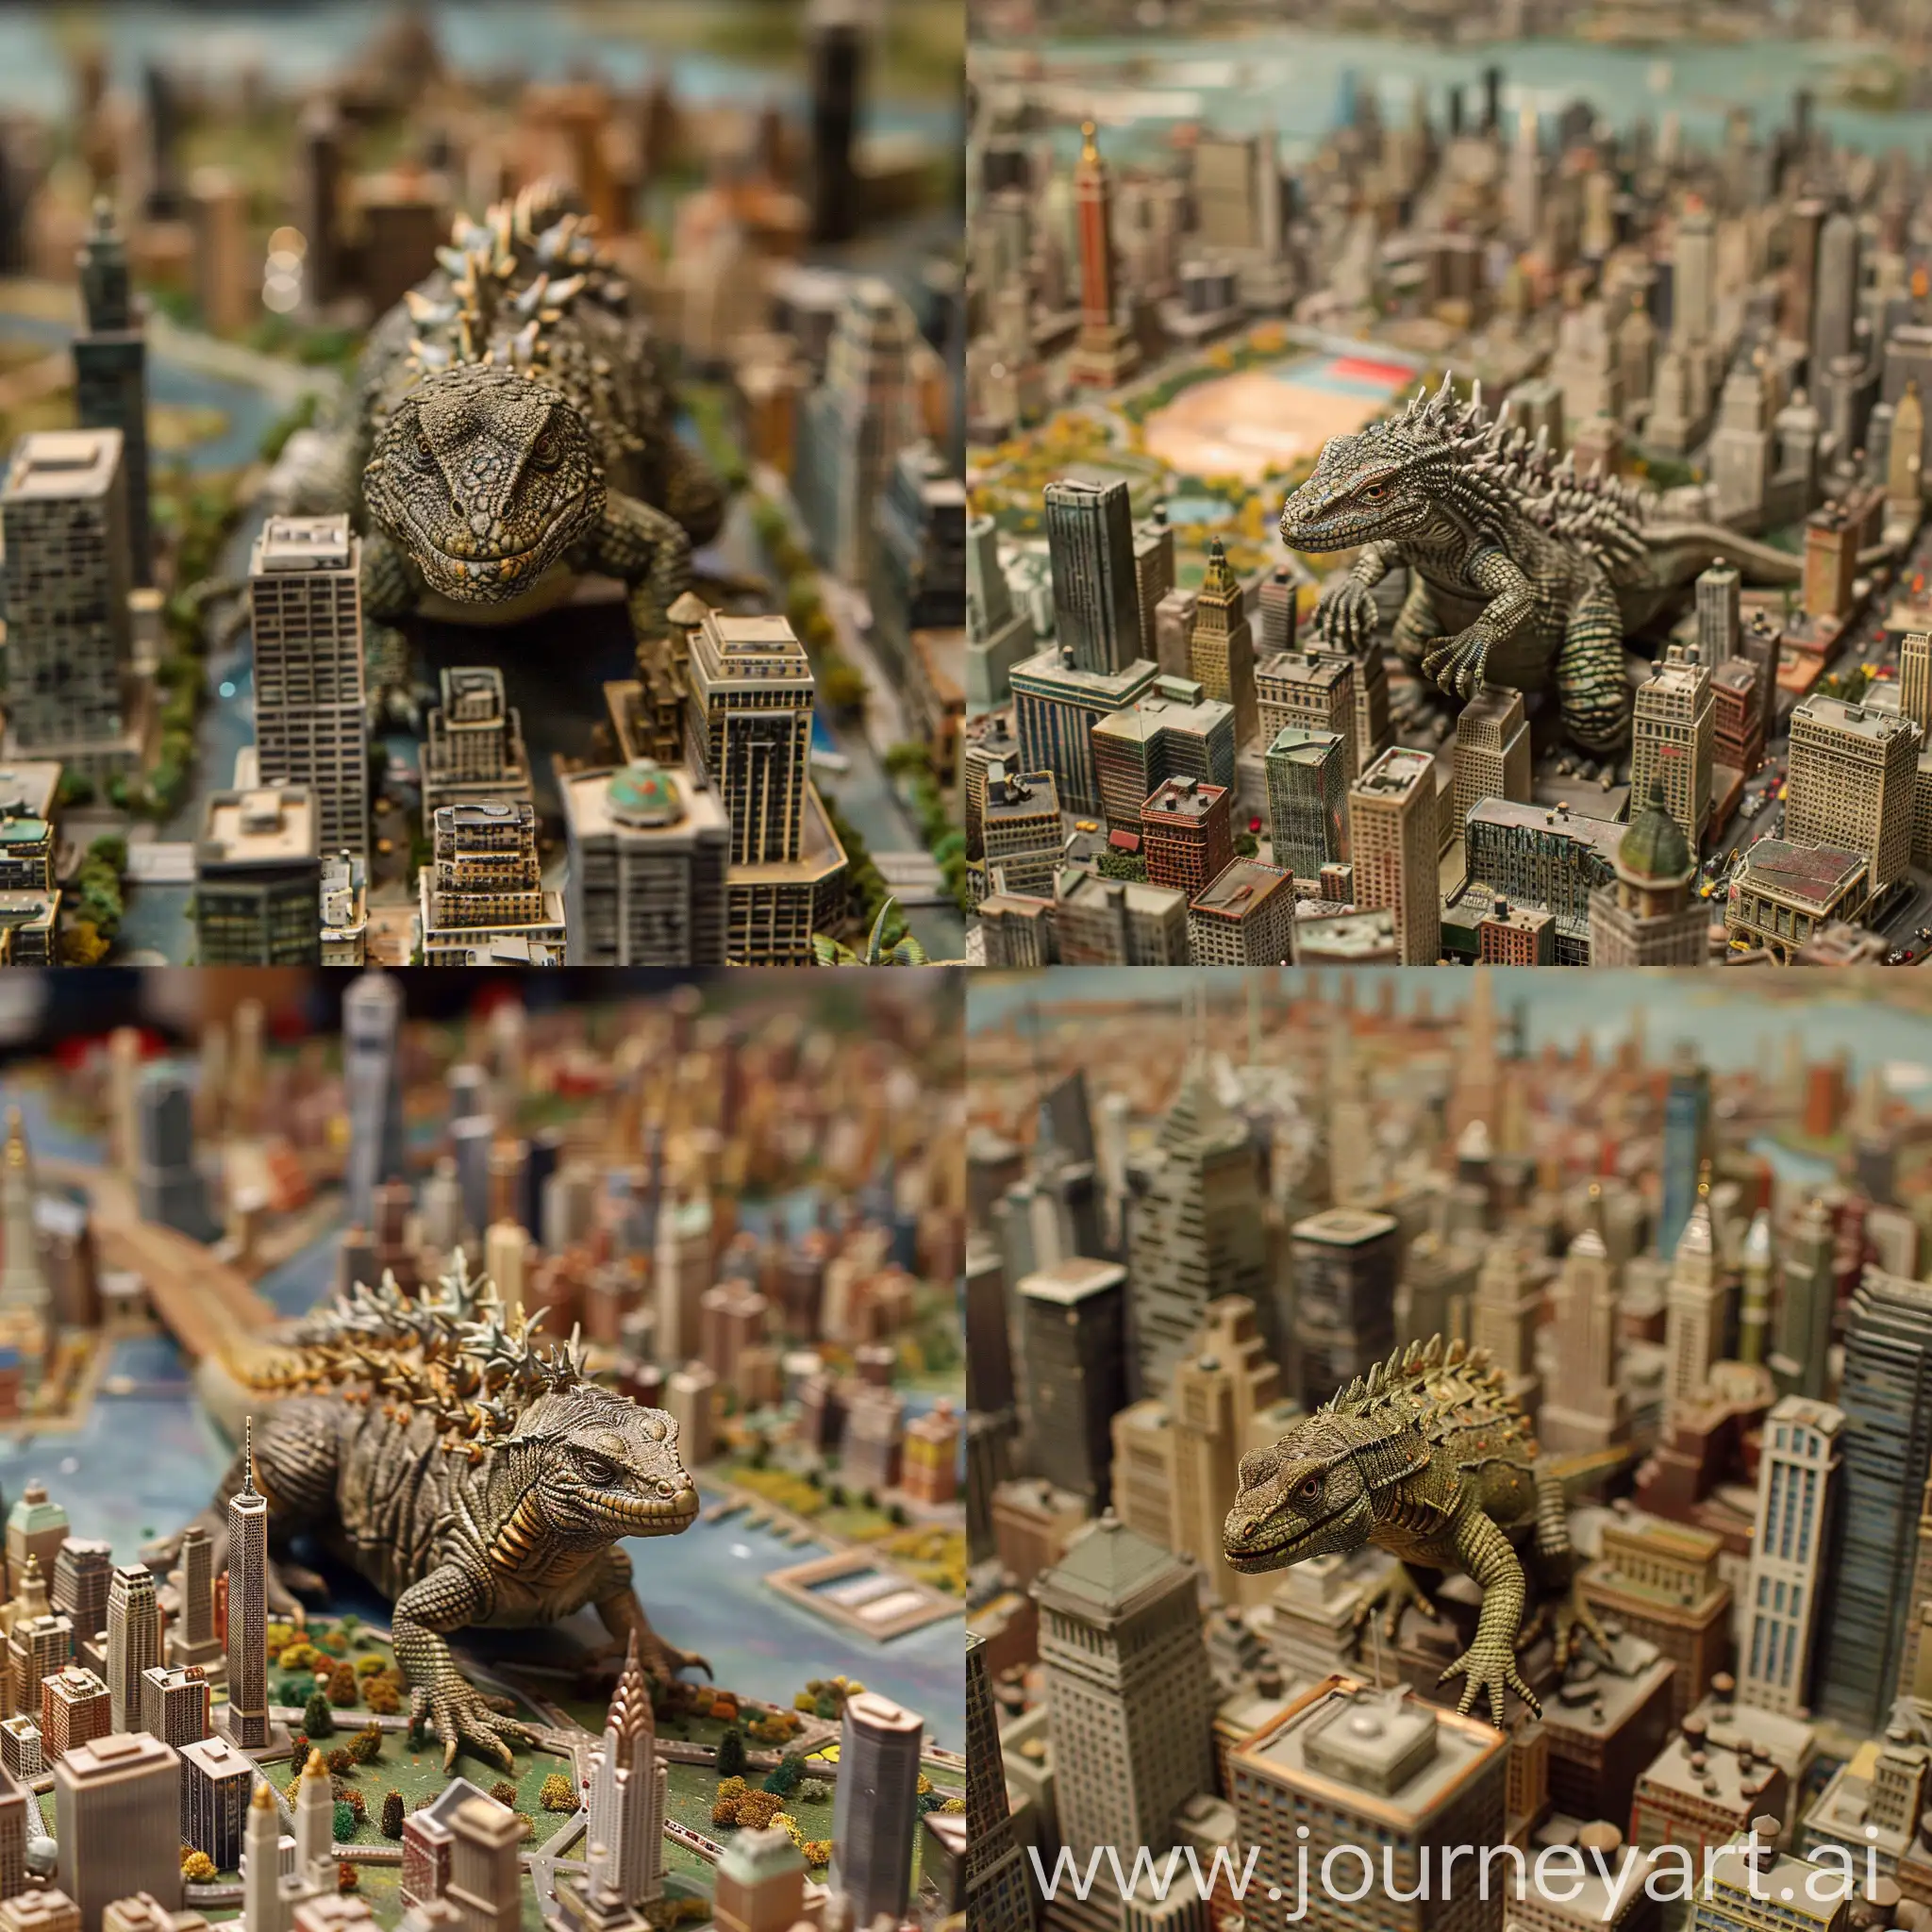 Un lagarto en medio de una maqueta de la ciudad de New York en miniatura, como si fuera Godzilla, hiper detallado